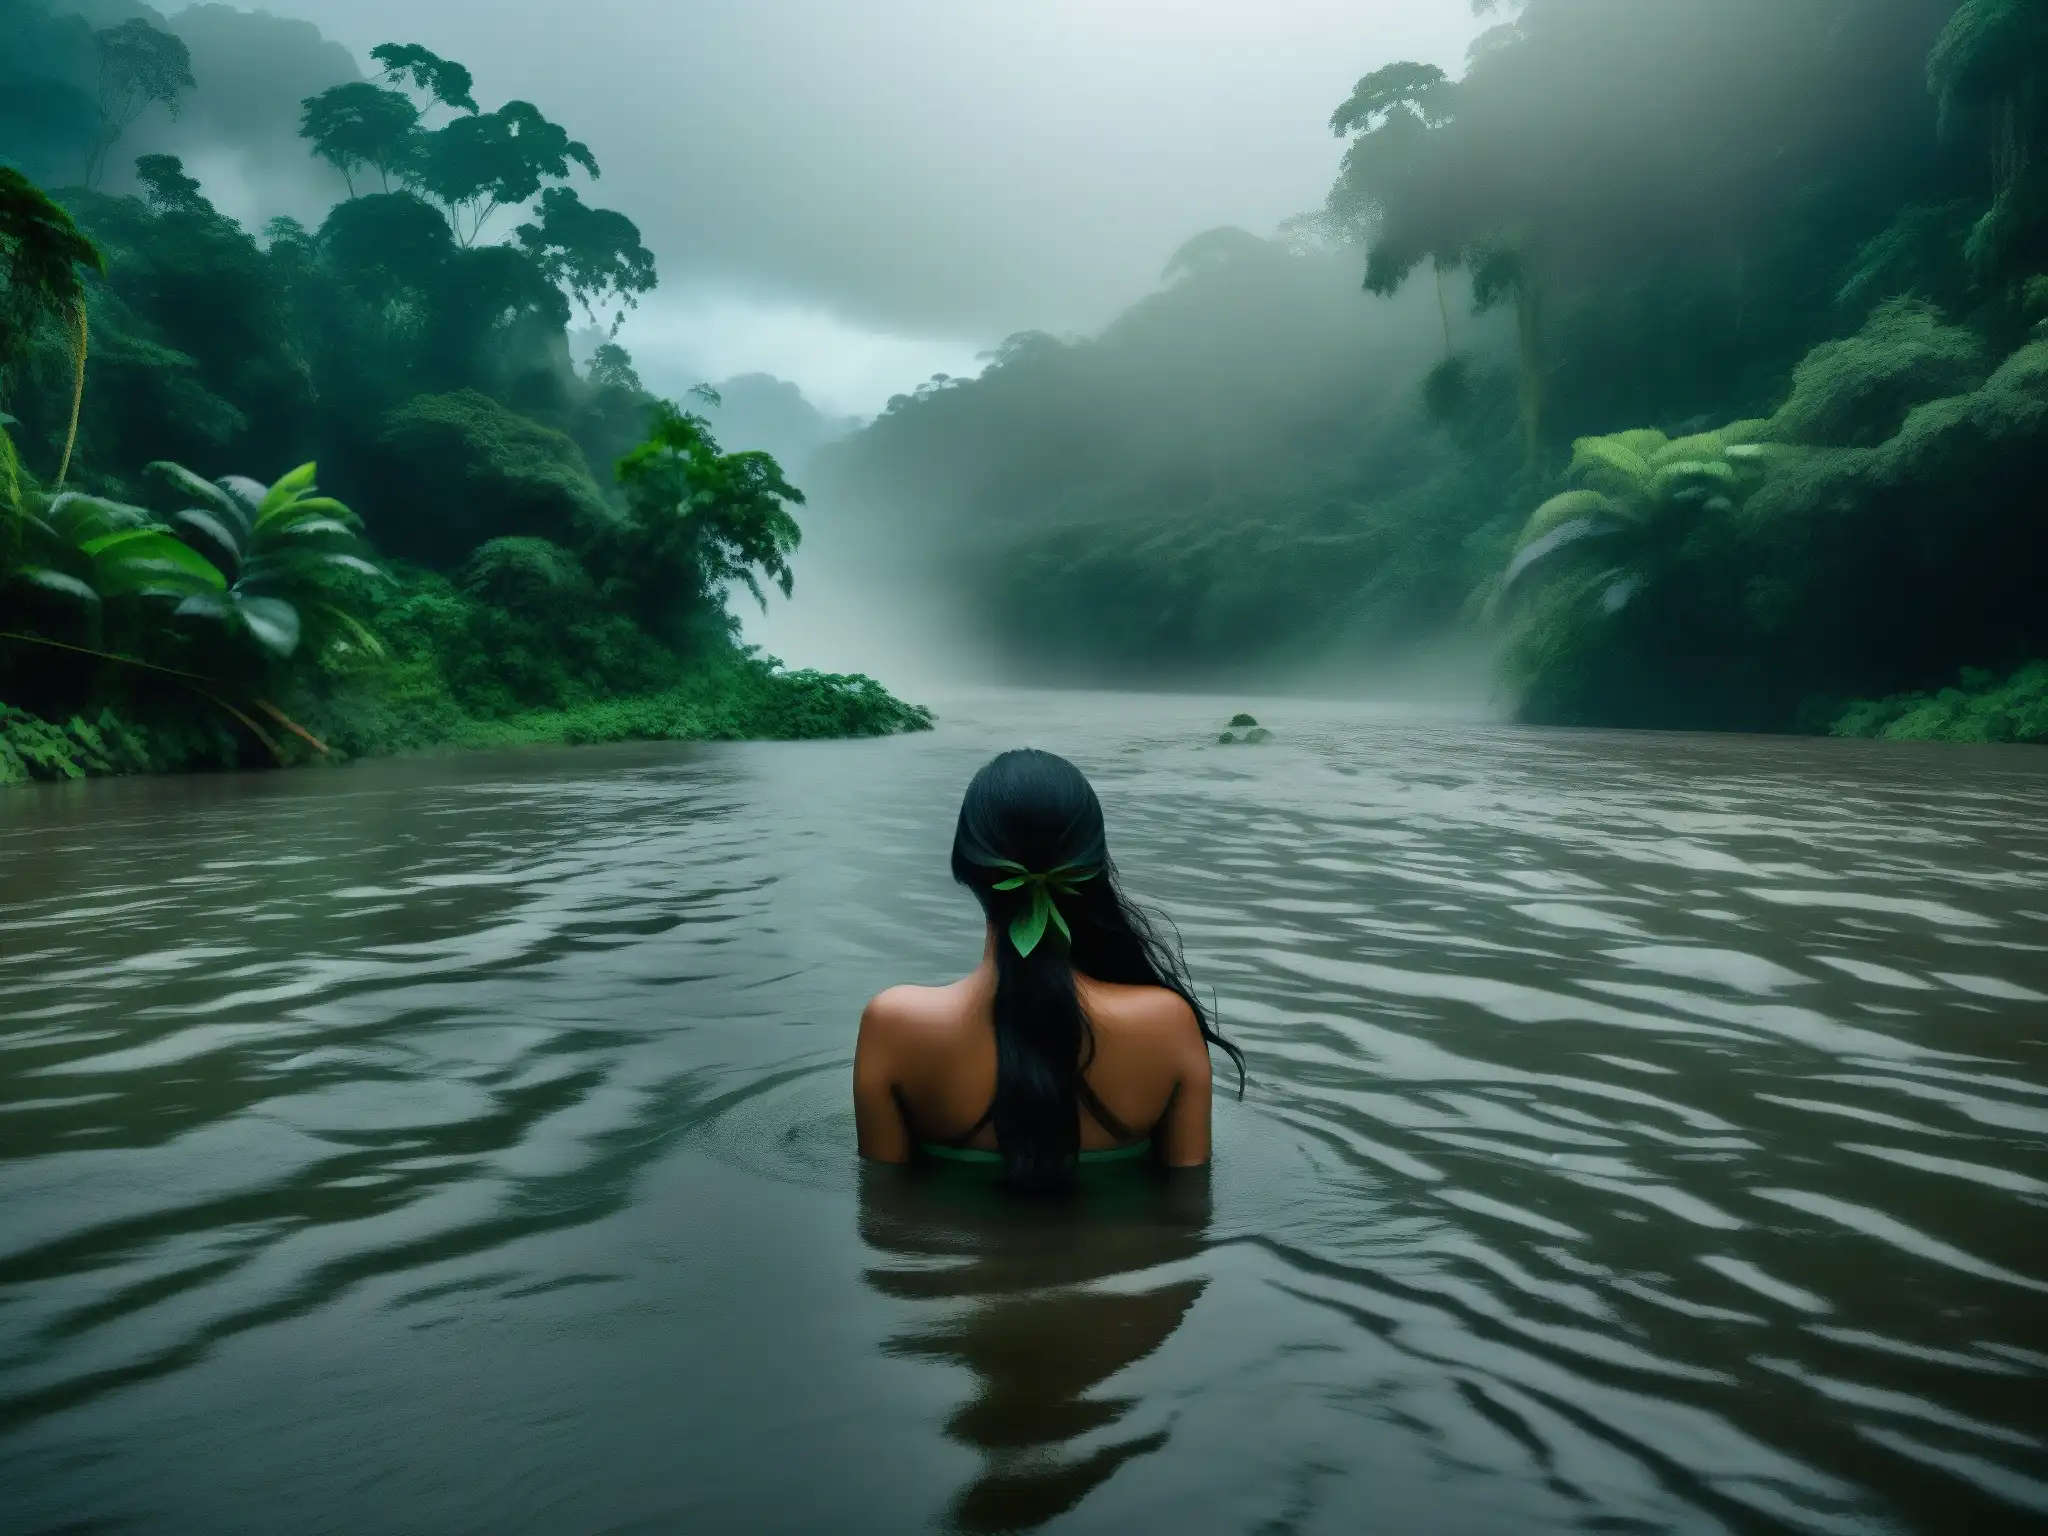 Imagen 8k detallada de un río amazónico cubierto de niebla, con frondosa vegetación y un aire de misterio